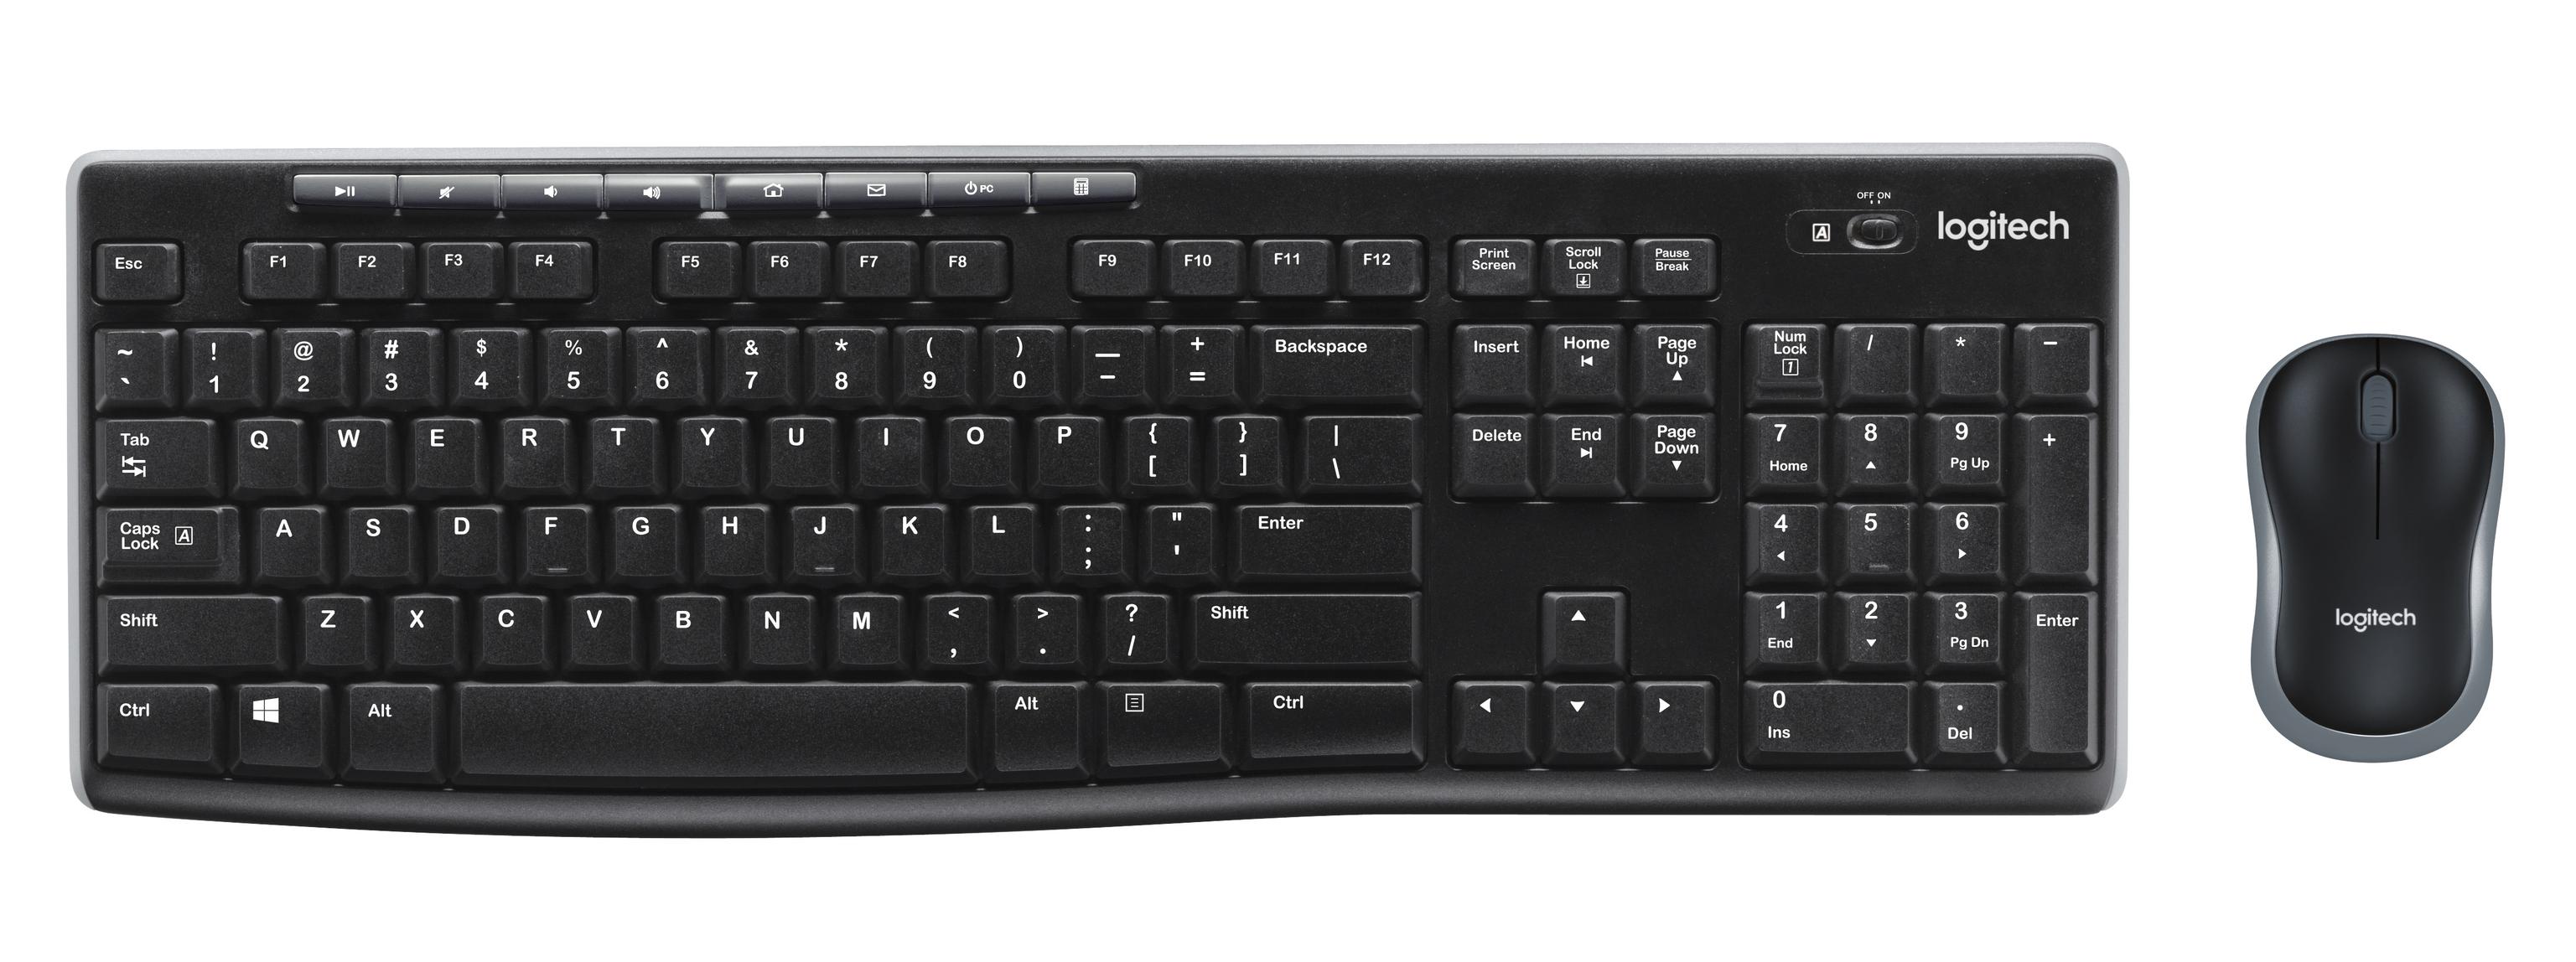 Offerta per Logitech - Wireless Combo MK270 tastiera Mouse incluso RF Wireless Slovacco Nero a 27,99€ in Comet